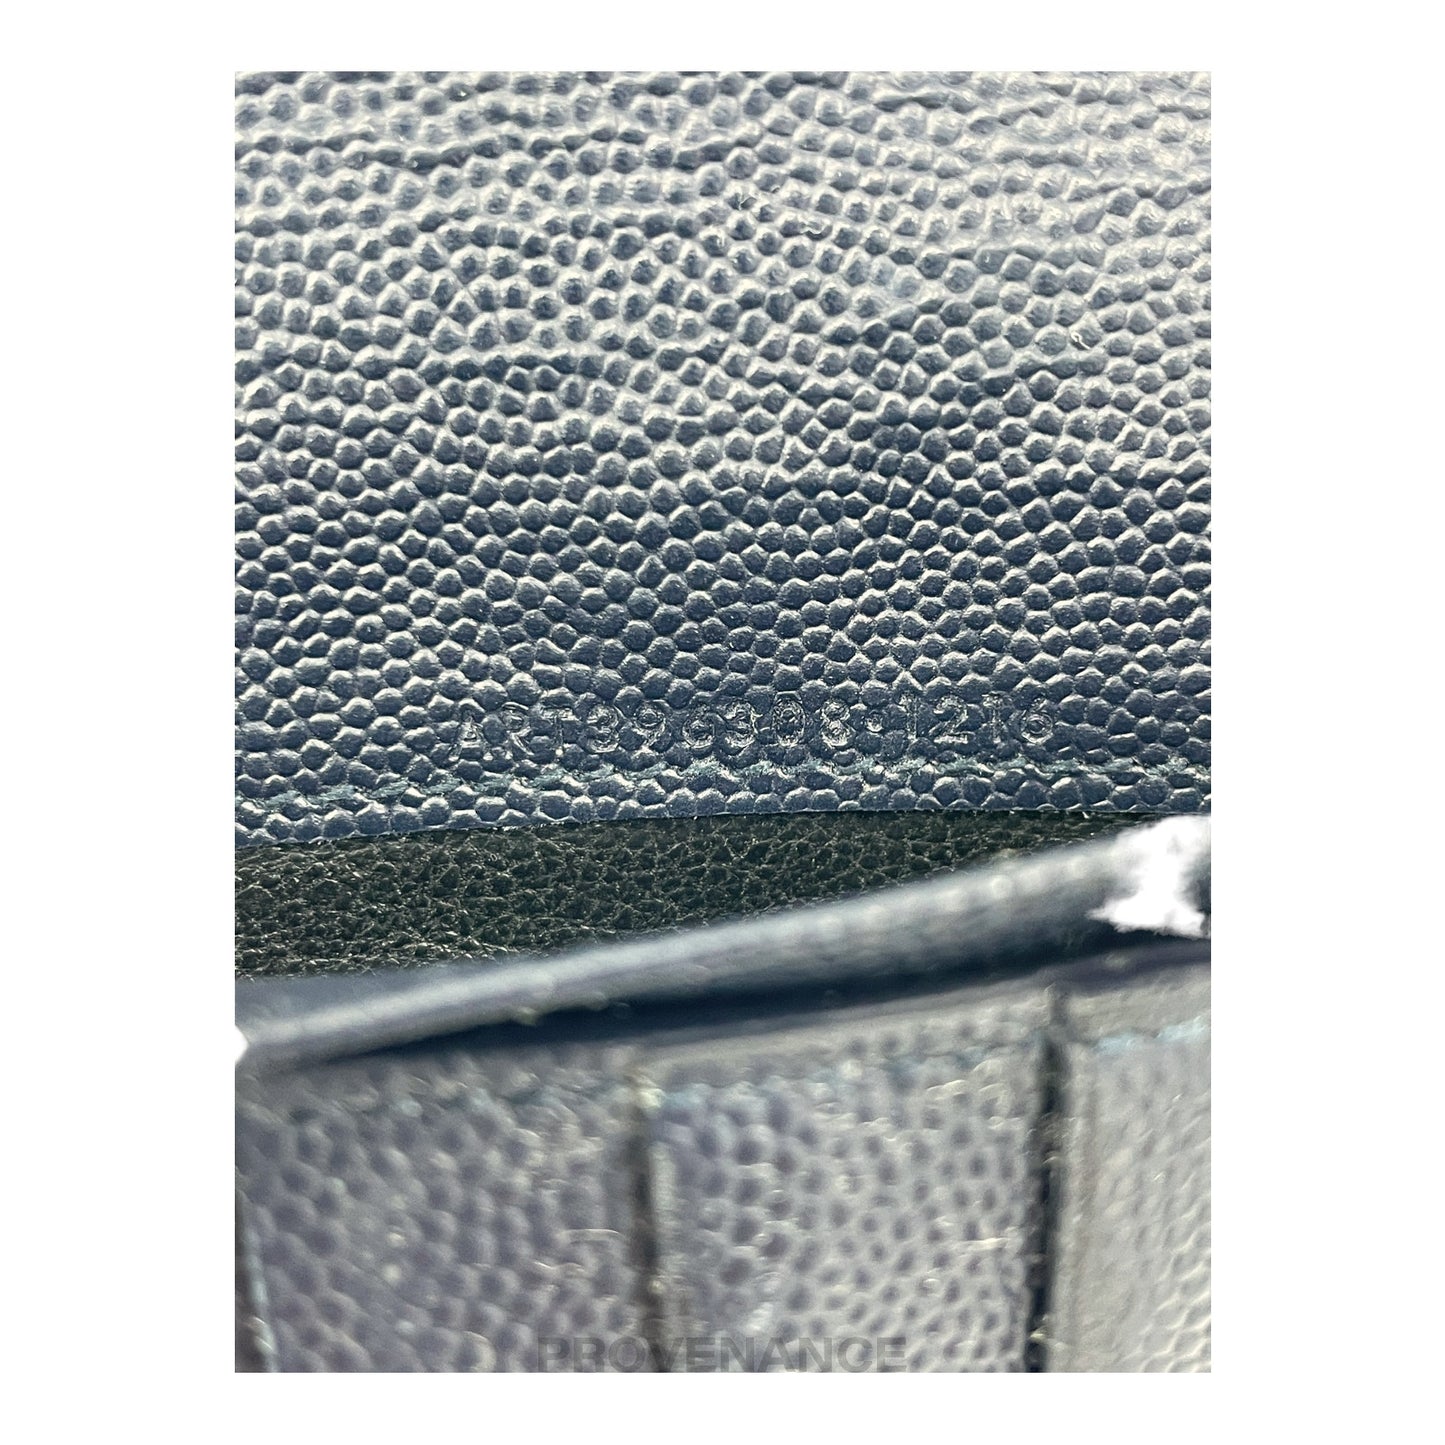 🔴 SLP Zip Long Wallet - Navy Leather